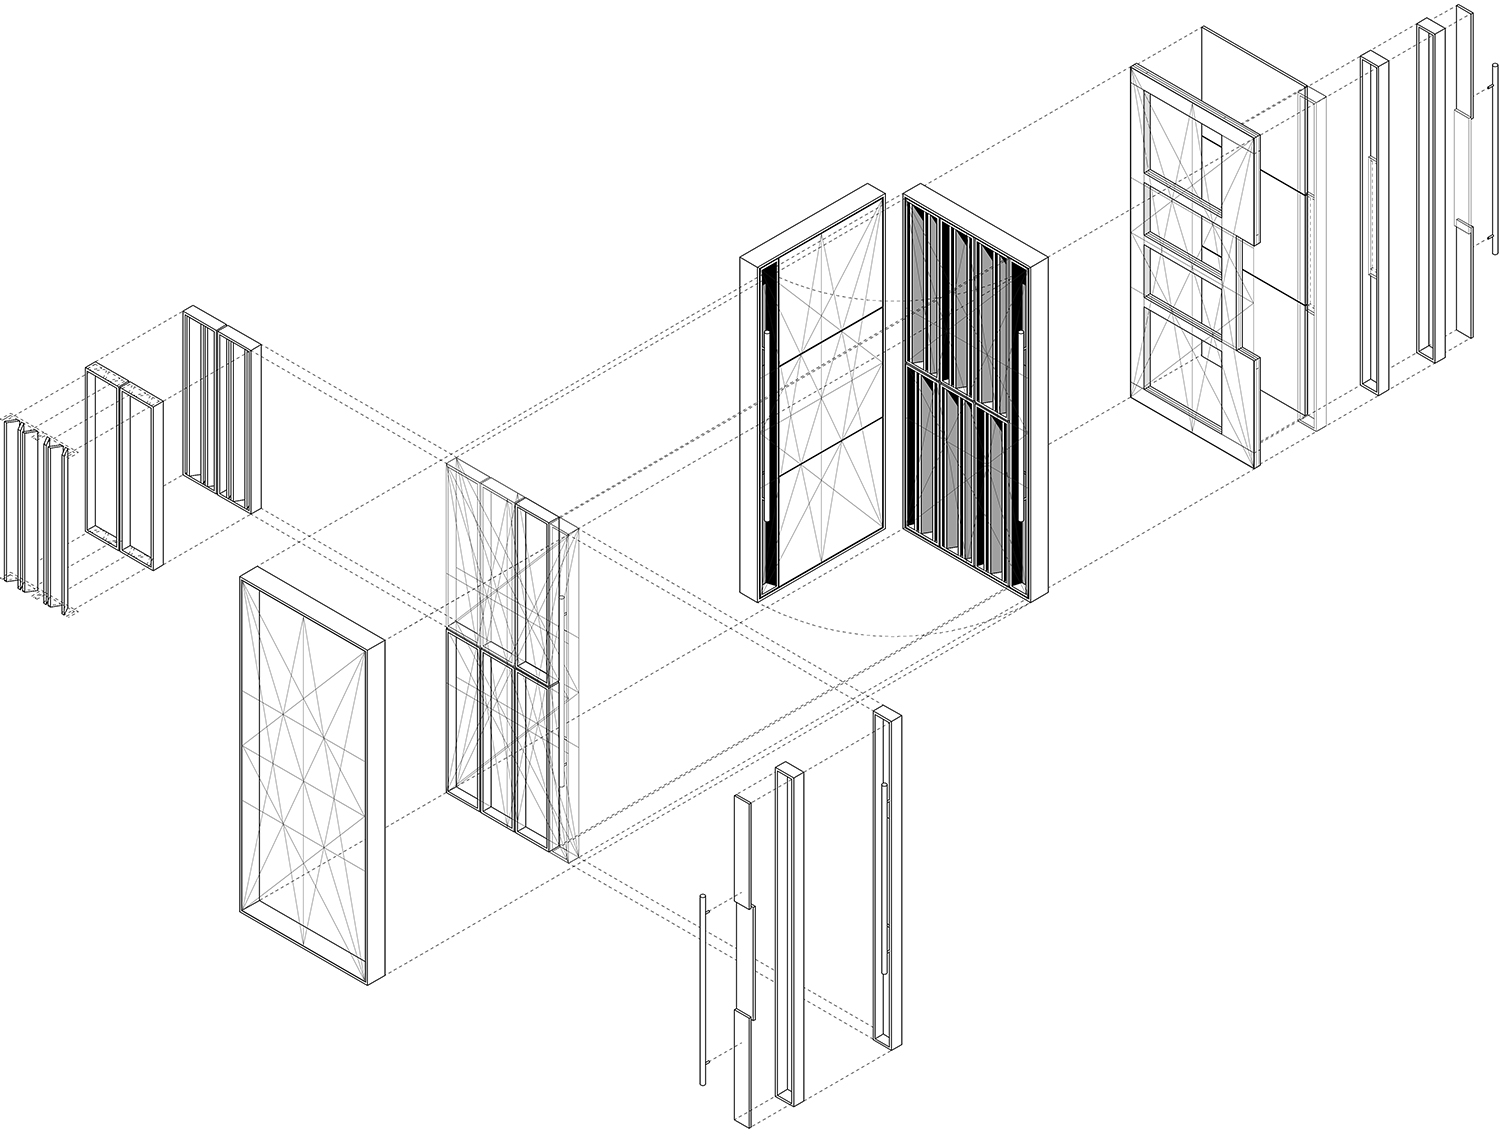 22-Doors isometric